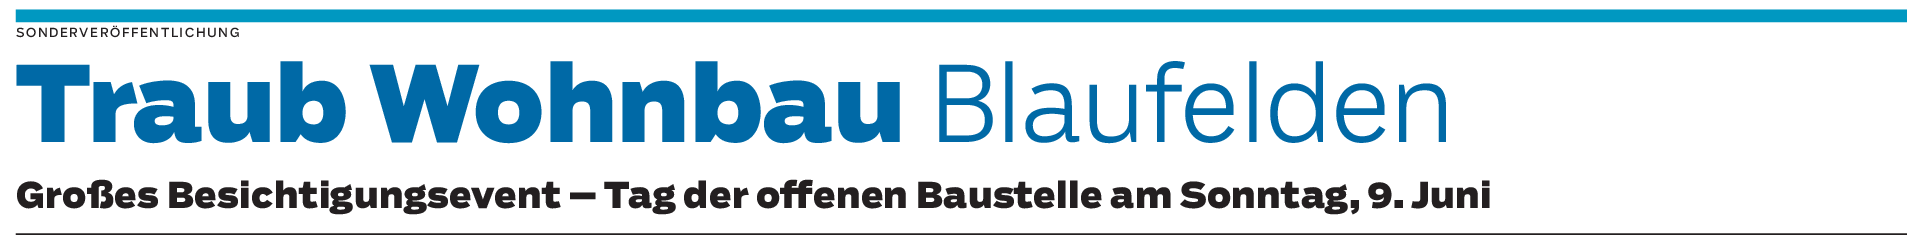 Traub Wohnbau in Blaufelden: Erster Eindruck vom Rohbau